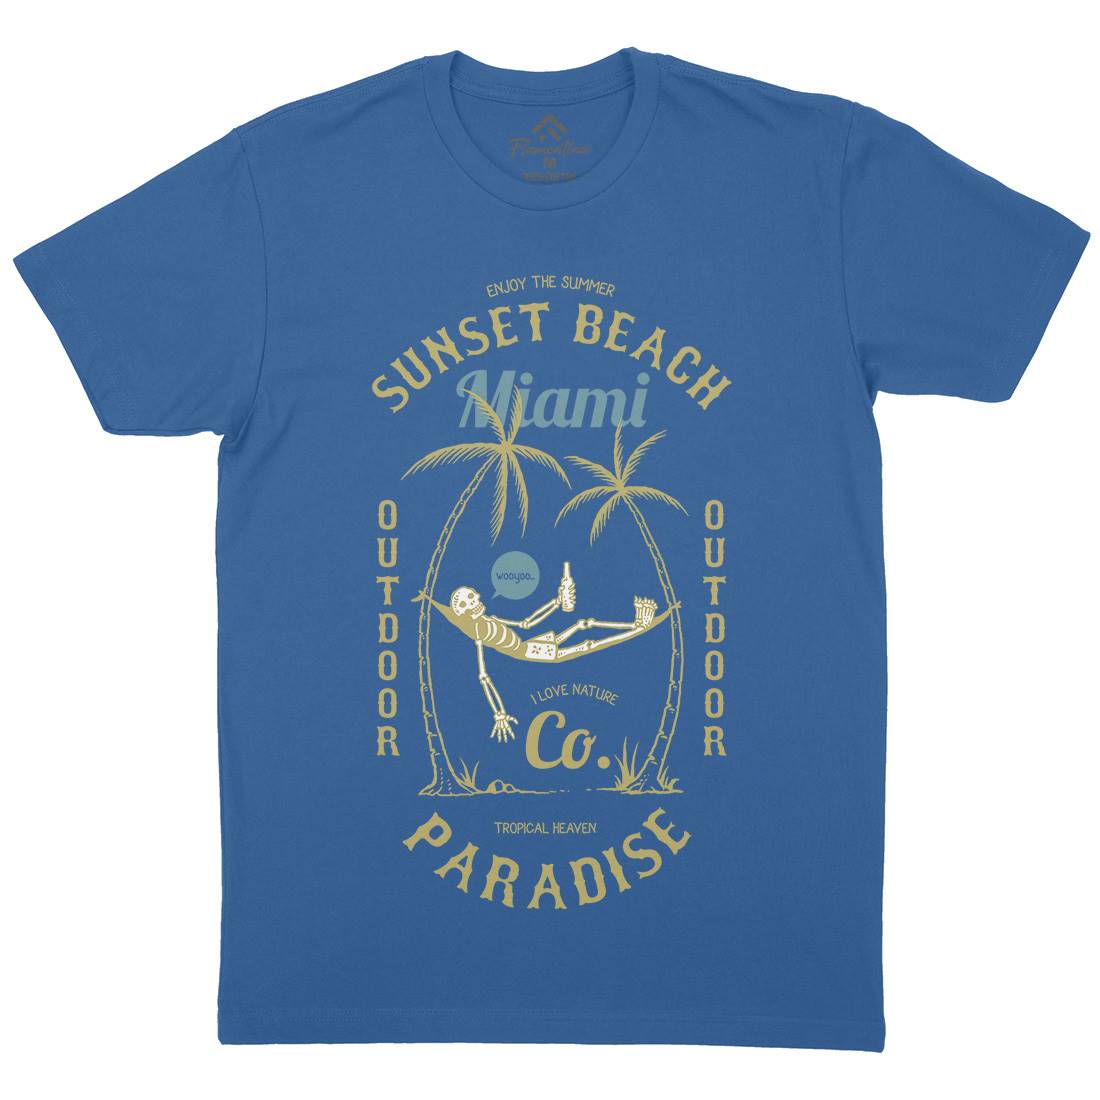 Skull Beach Mens Organic Crew Neck T-Shirt Nature C773